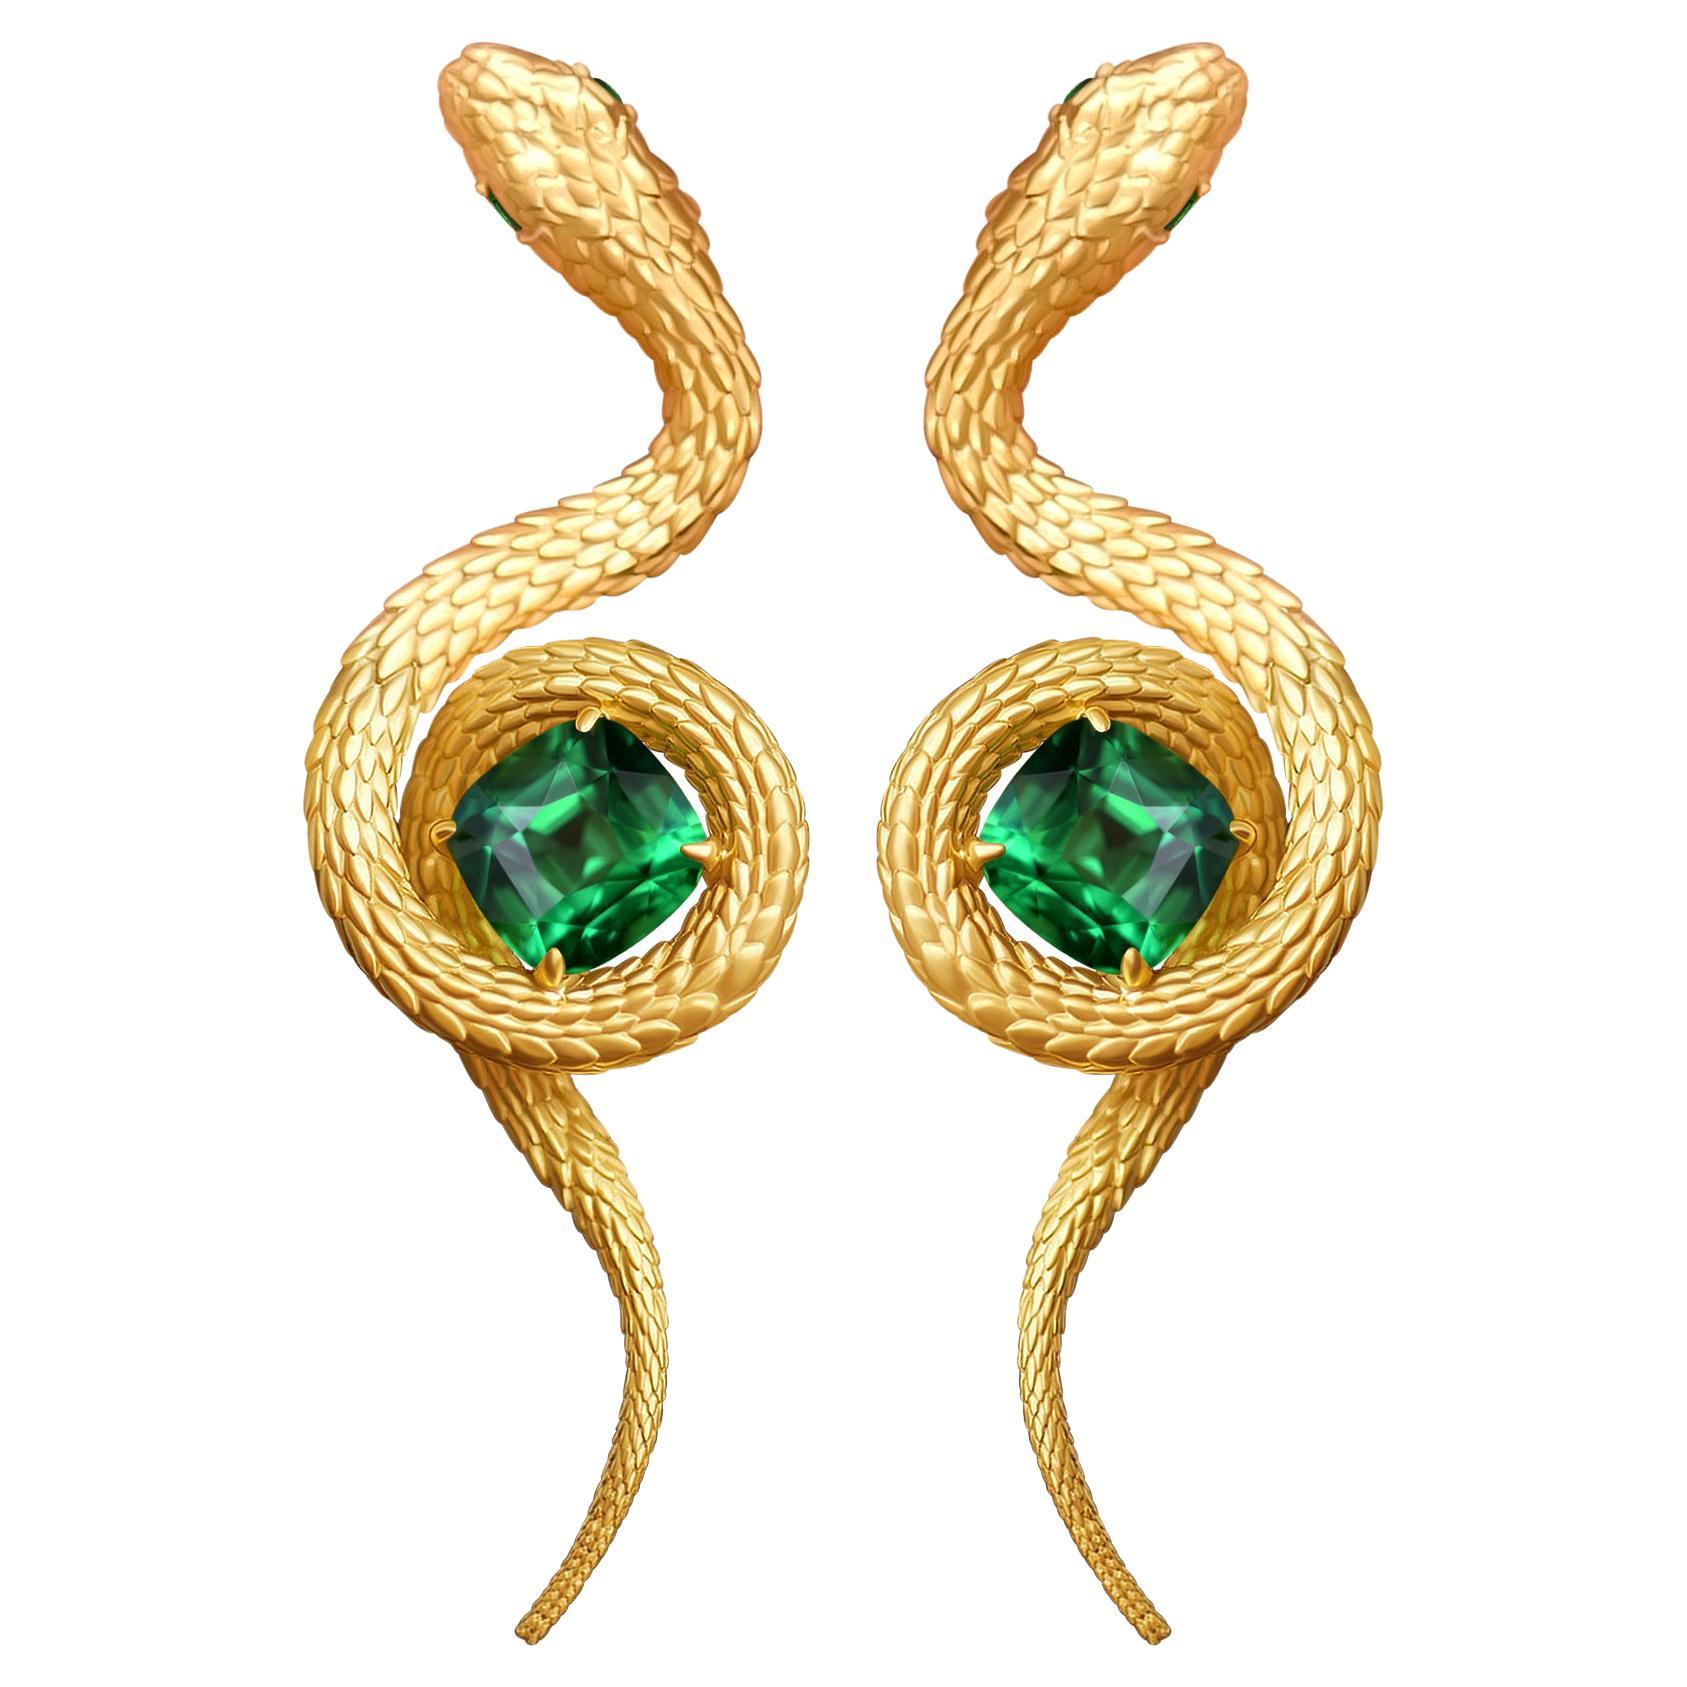 5, 34 Carat Vivid Green Tsavorite 18 Karat Yellow Golden Serpent Earrings by D&A